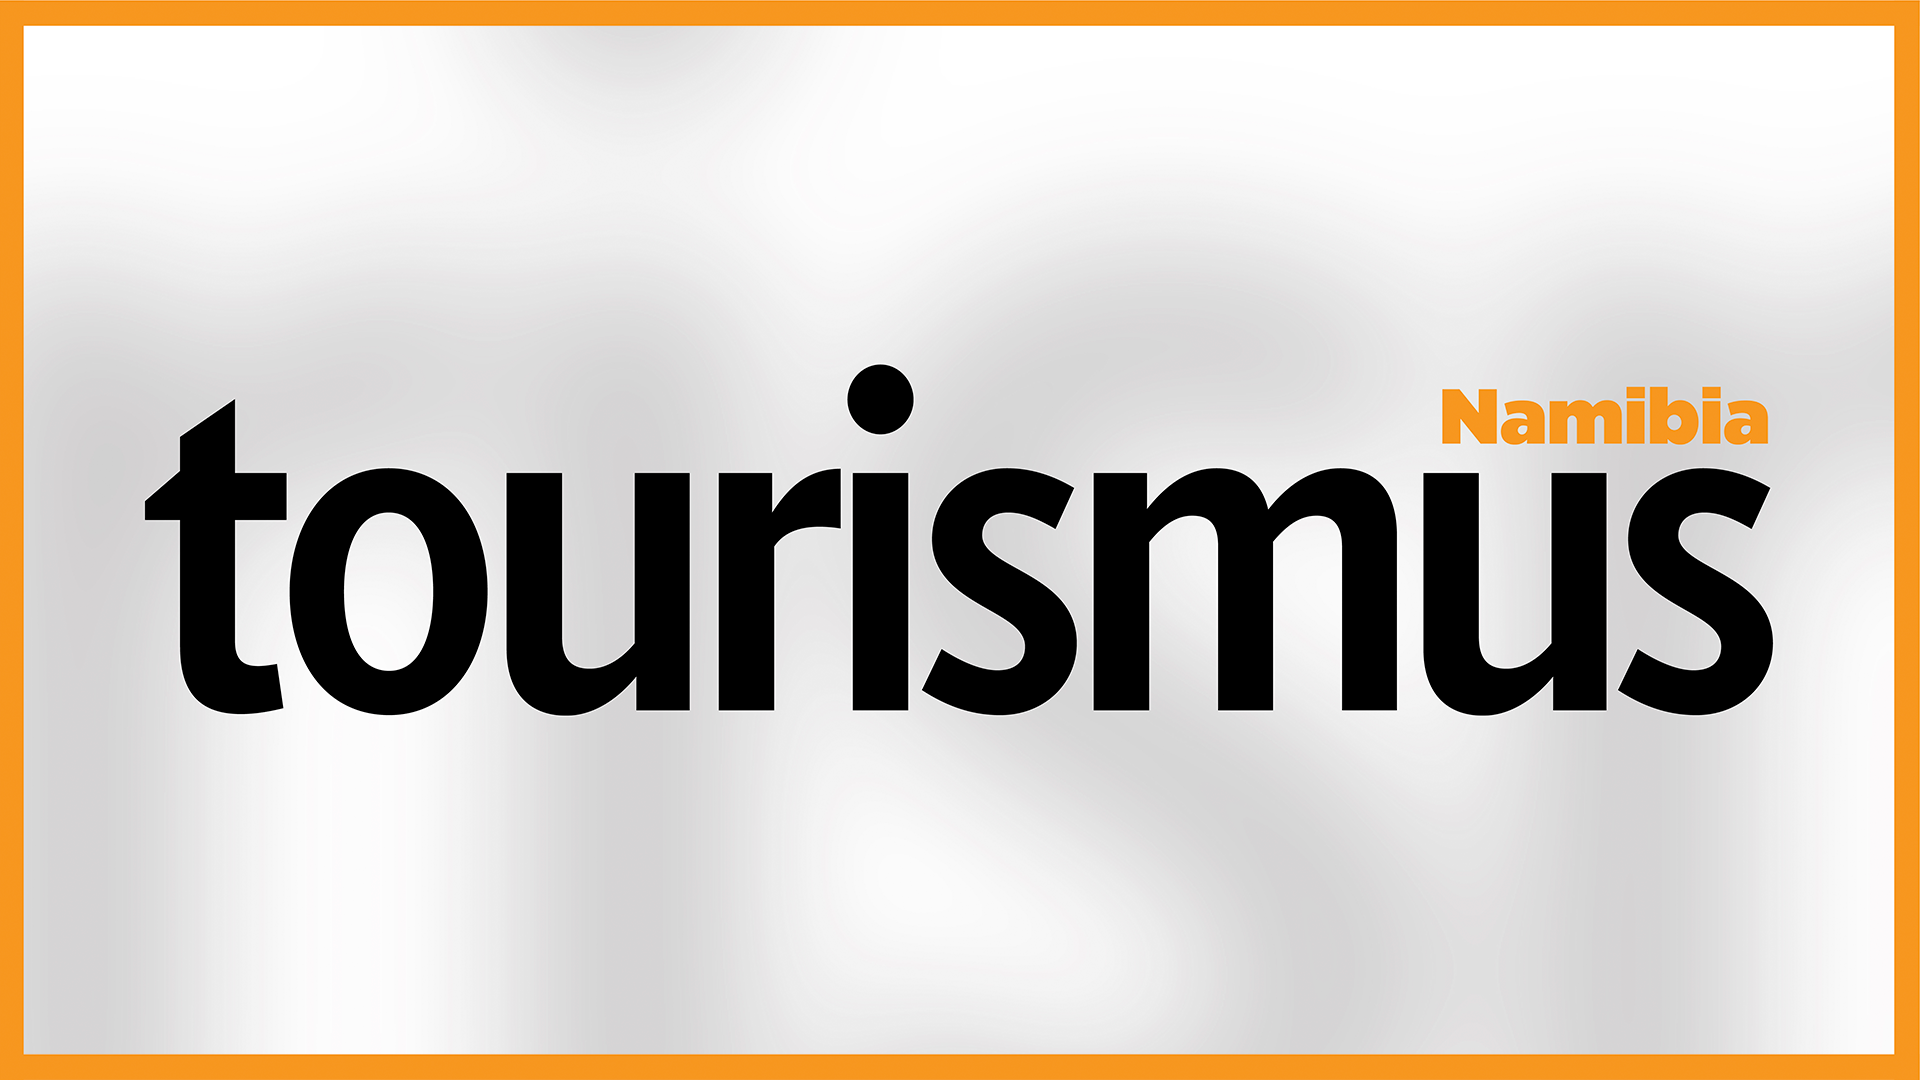 Tourismus Namibia (English) - 31 July 2021